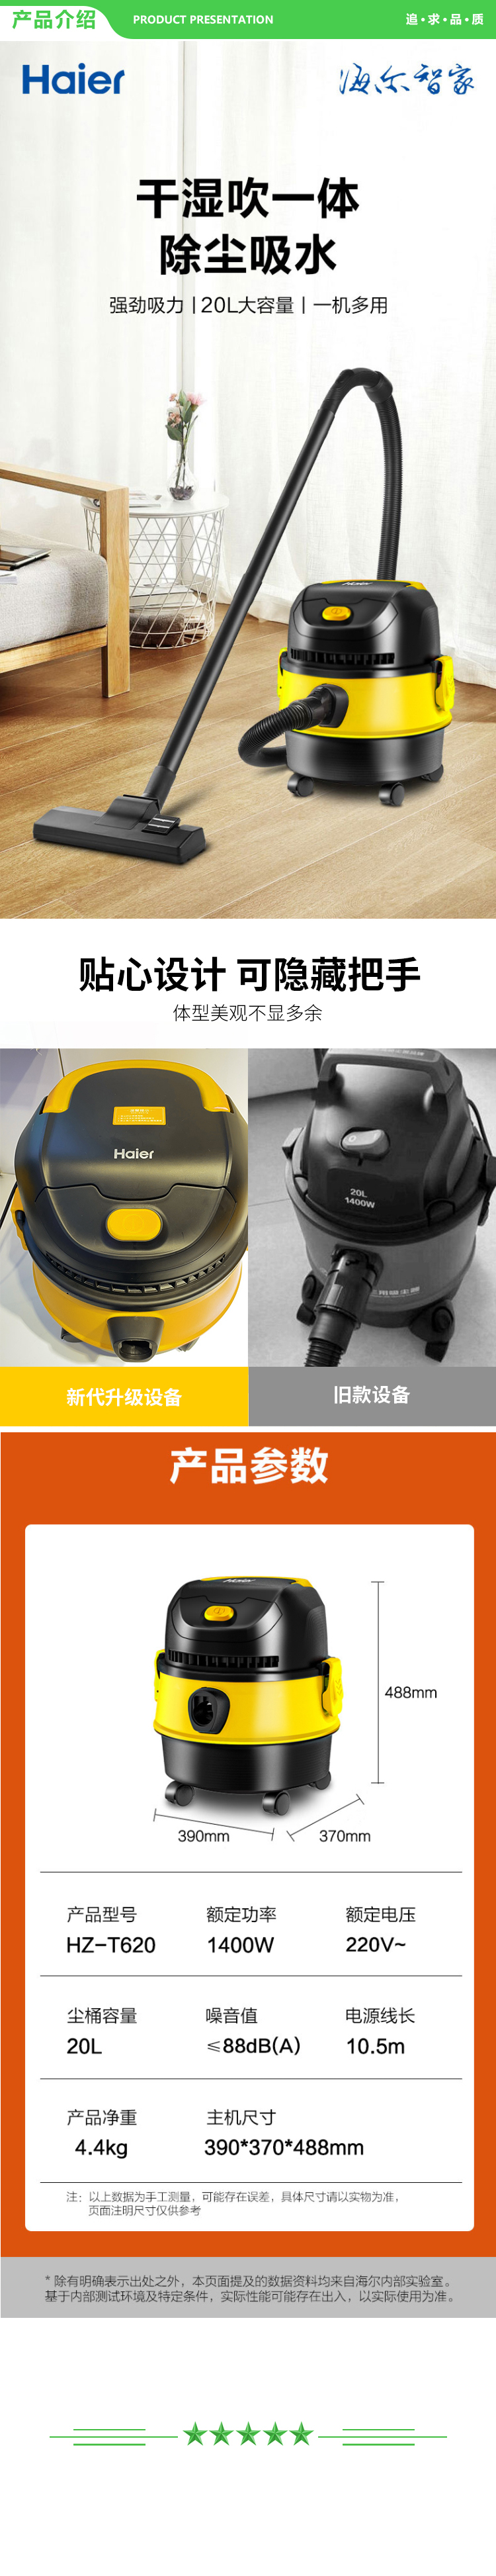 海尔 Haier HZ-T620  桶式20L大容量干湿吹家用工业商用强劲大功率多重降噪吸尘器 18KPA大吸力吸尘机 .jpg